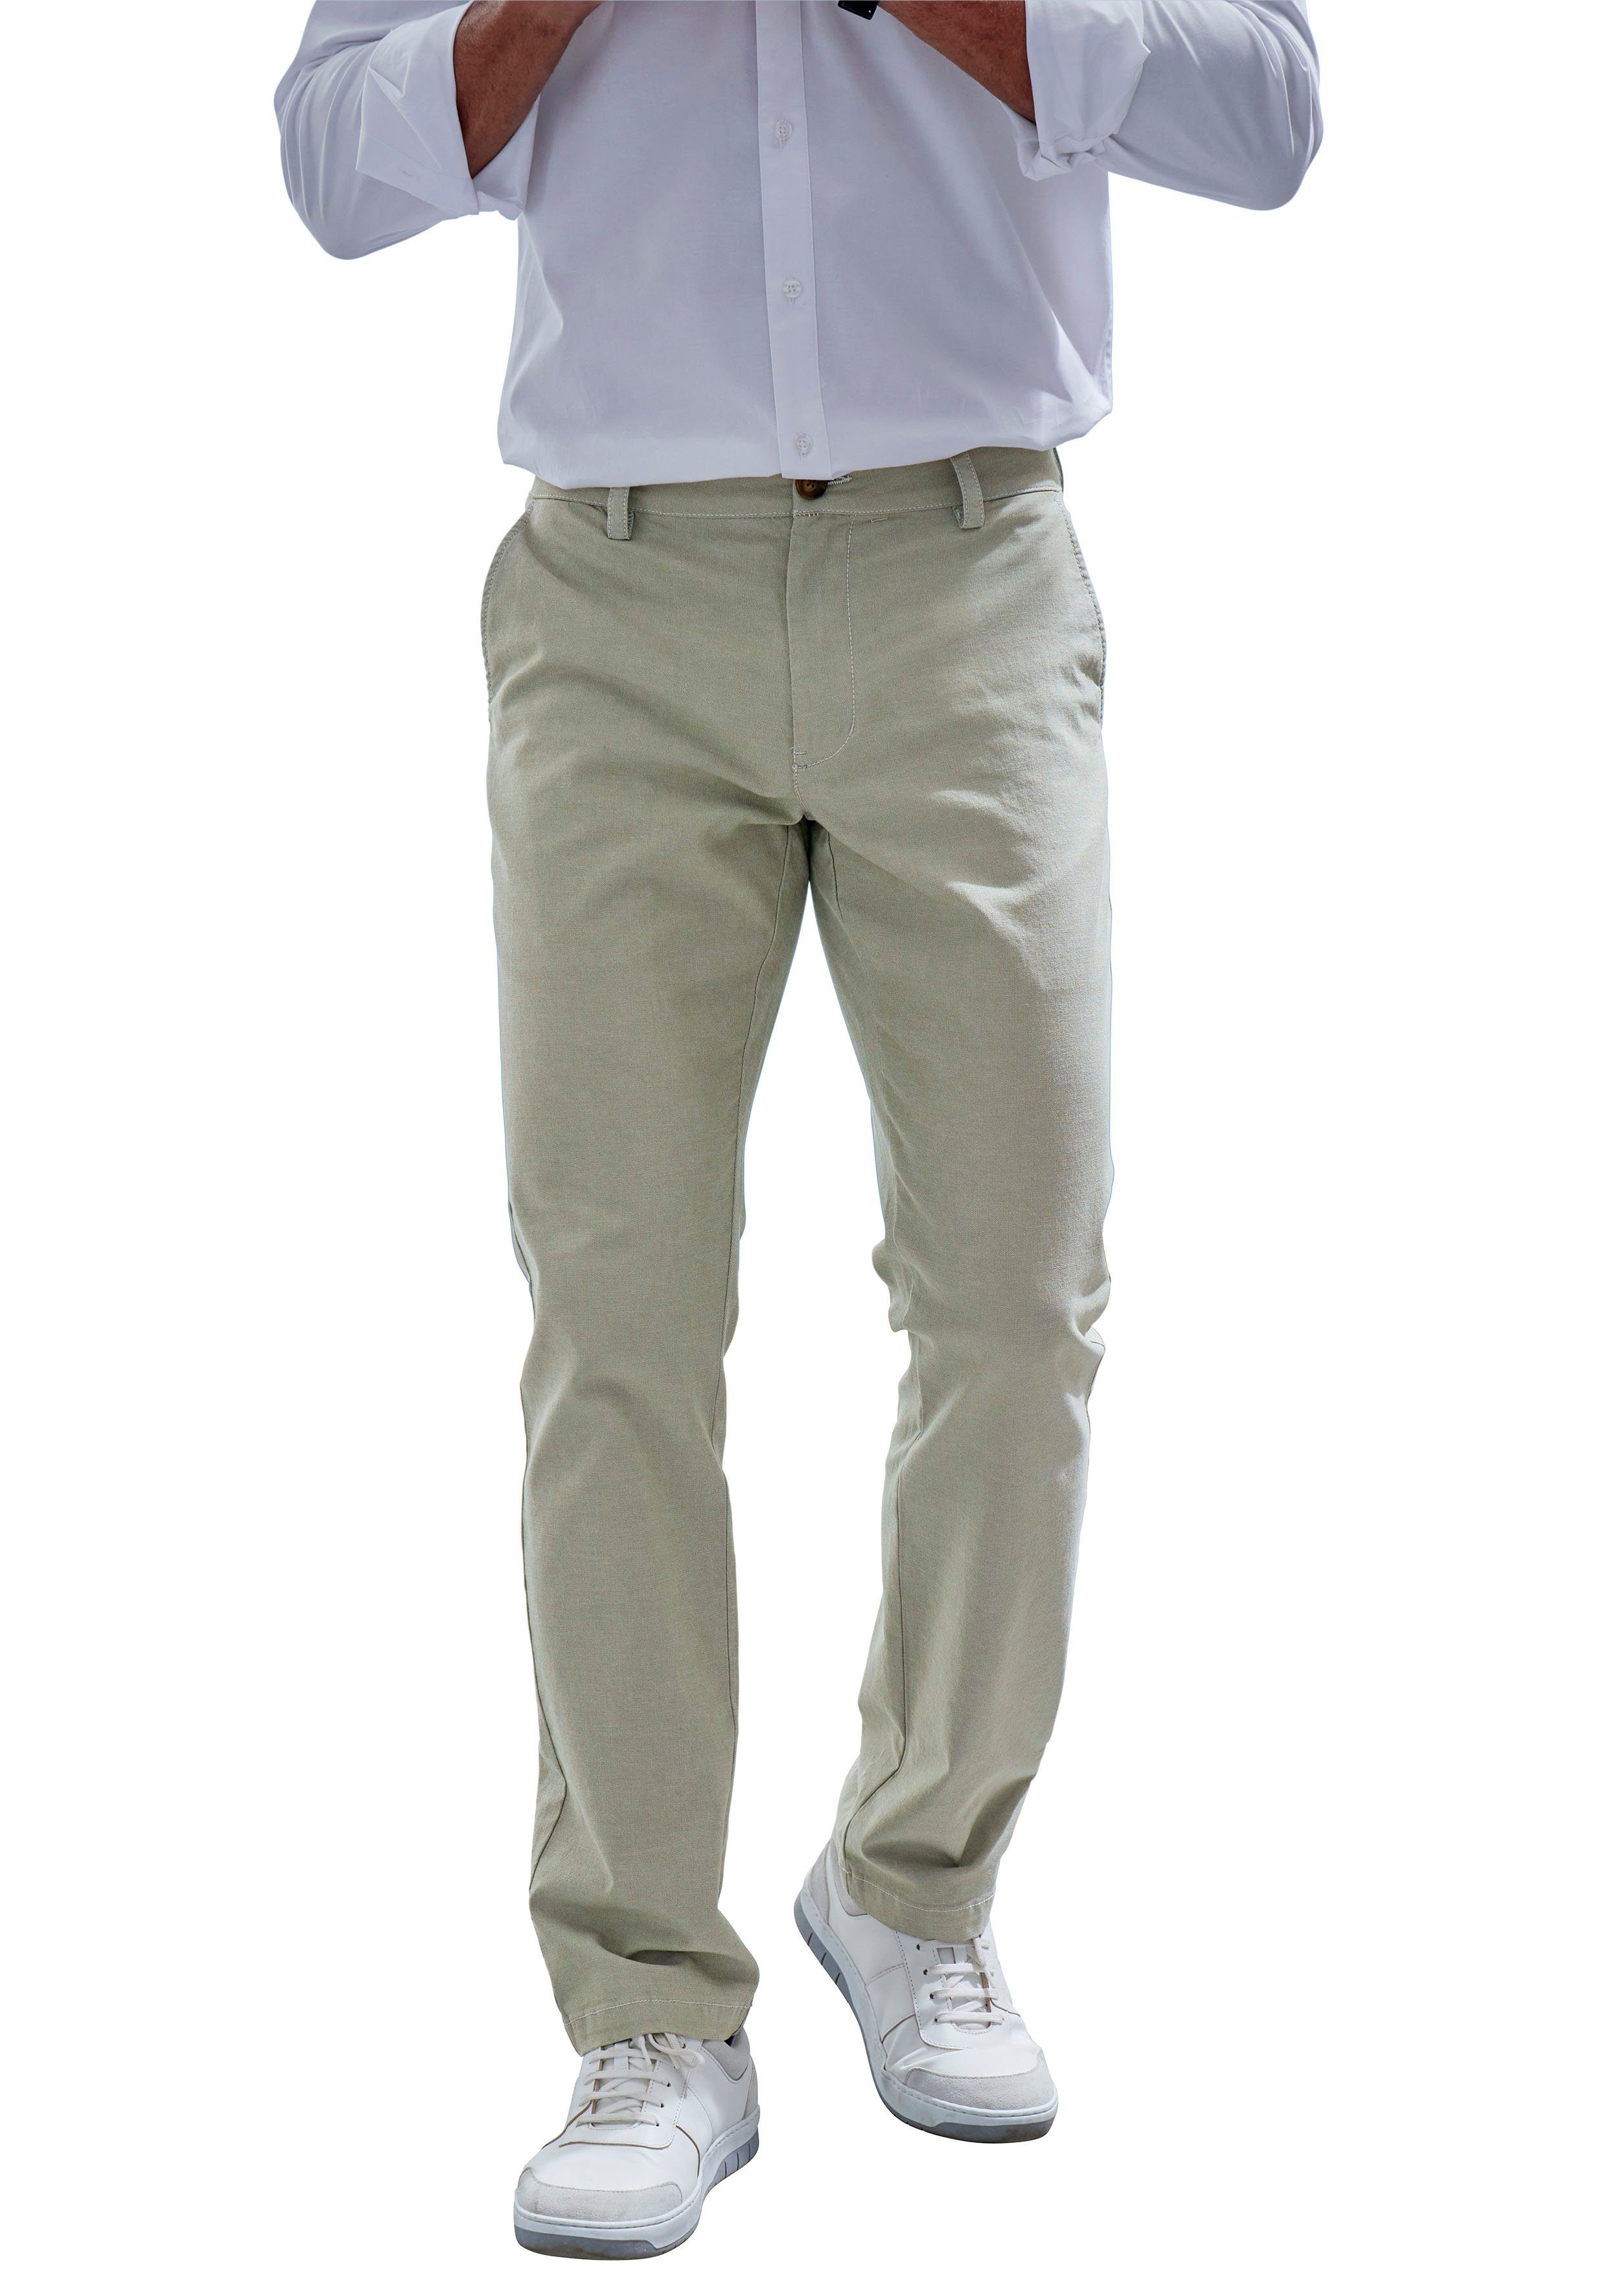 John Devin Chinohose regular-fit, lange Oxford Hose aus elastischer Baumwoll-Qualität